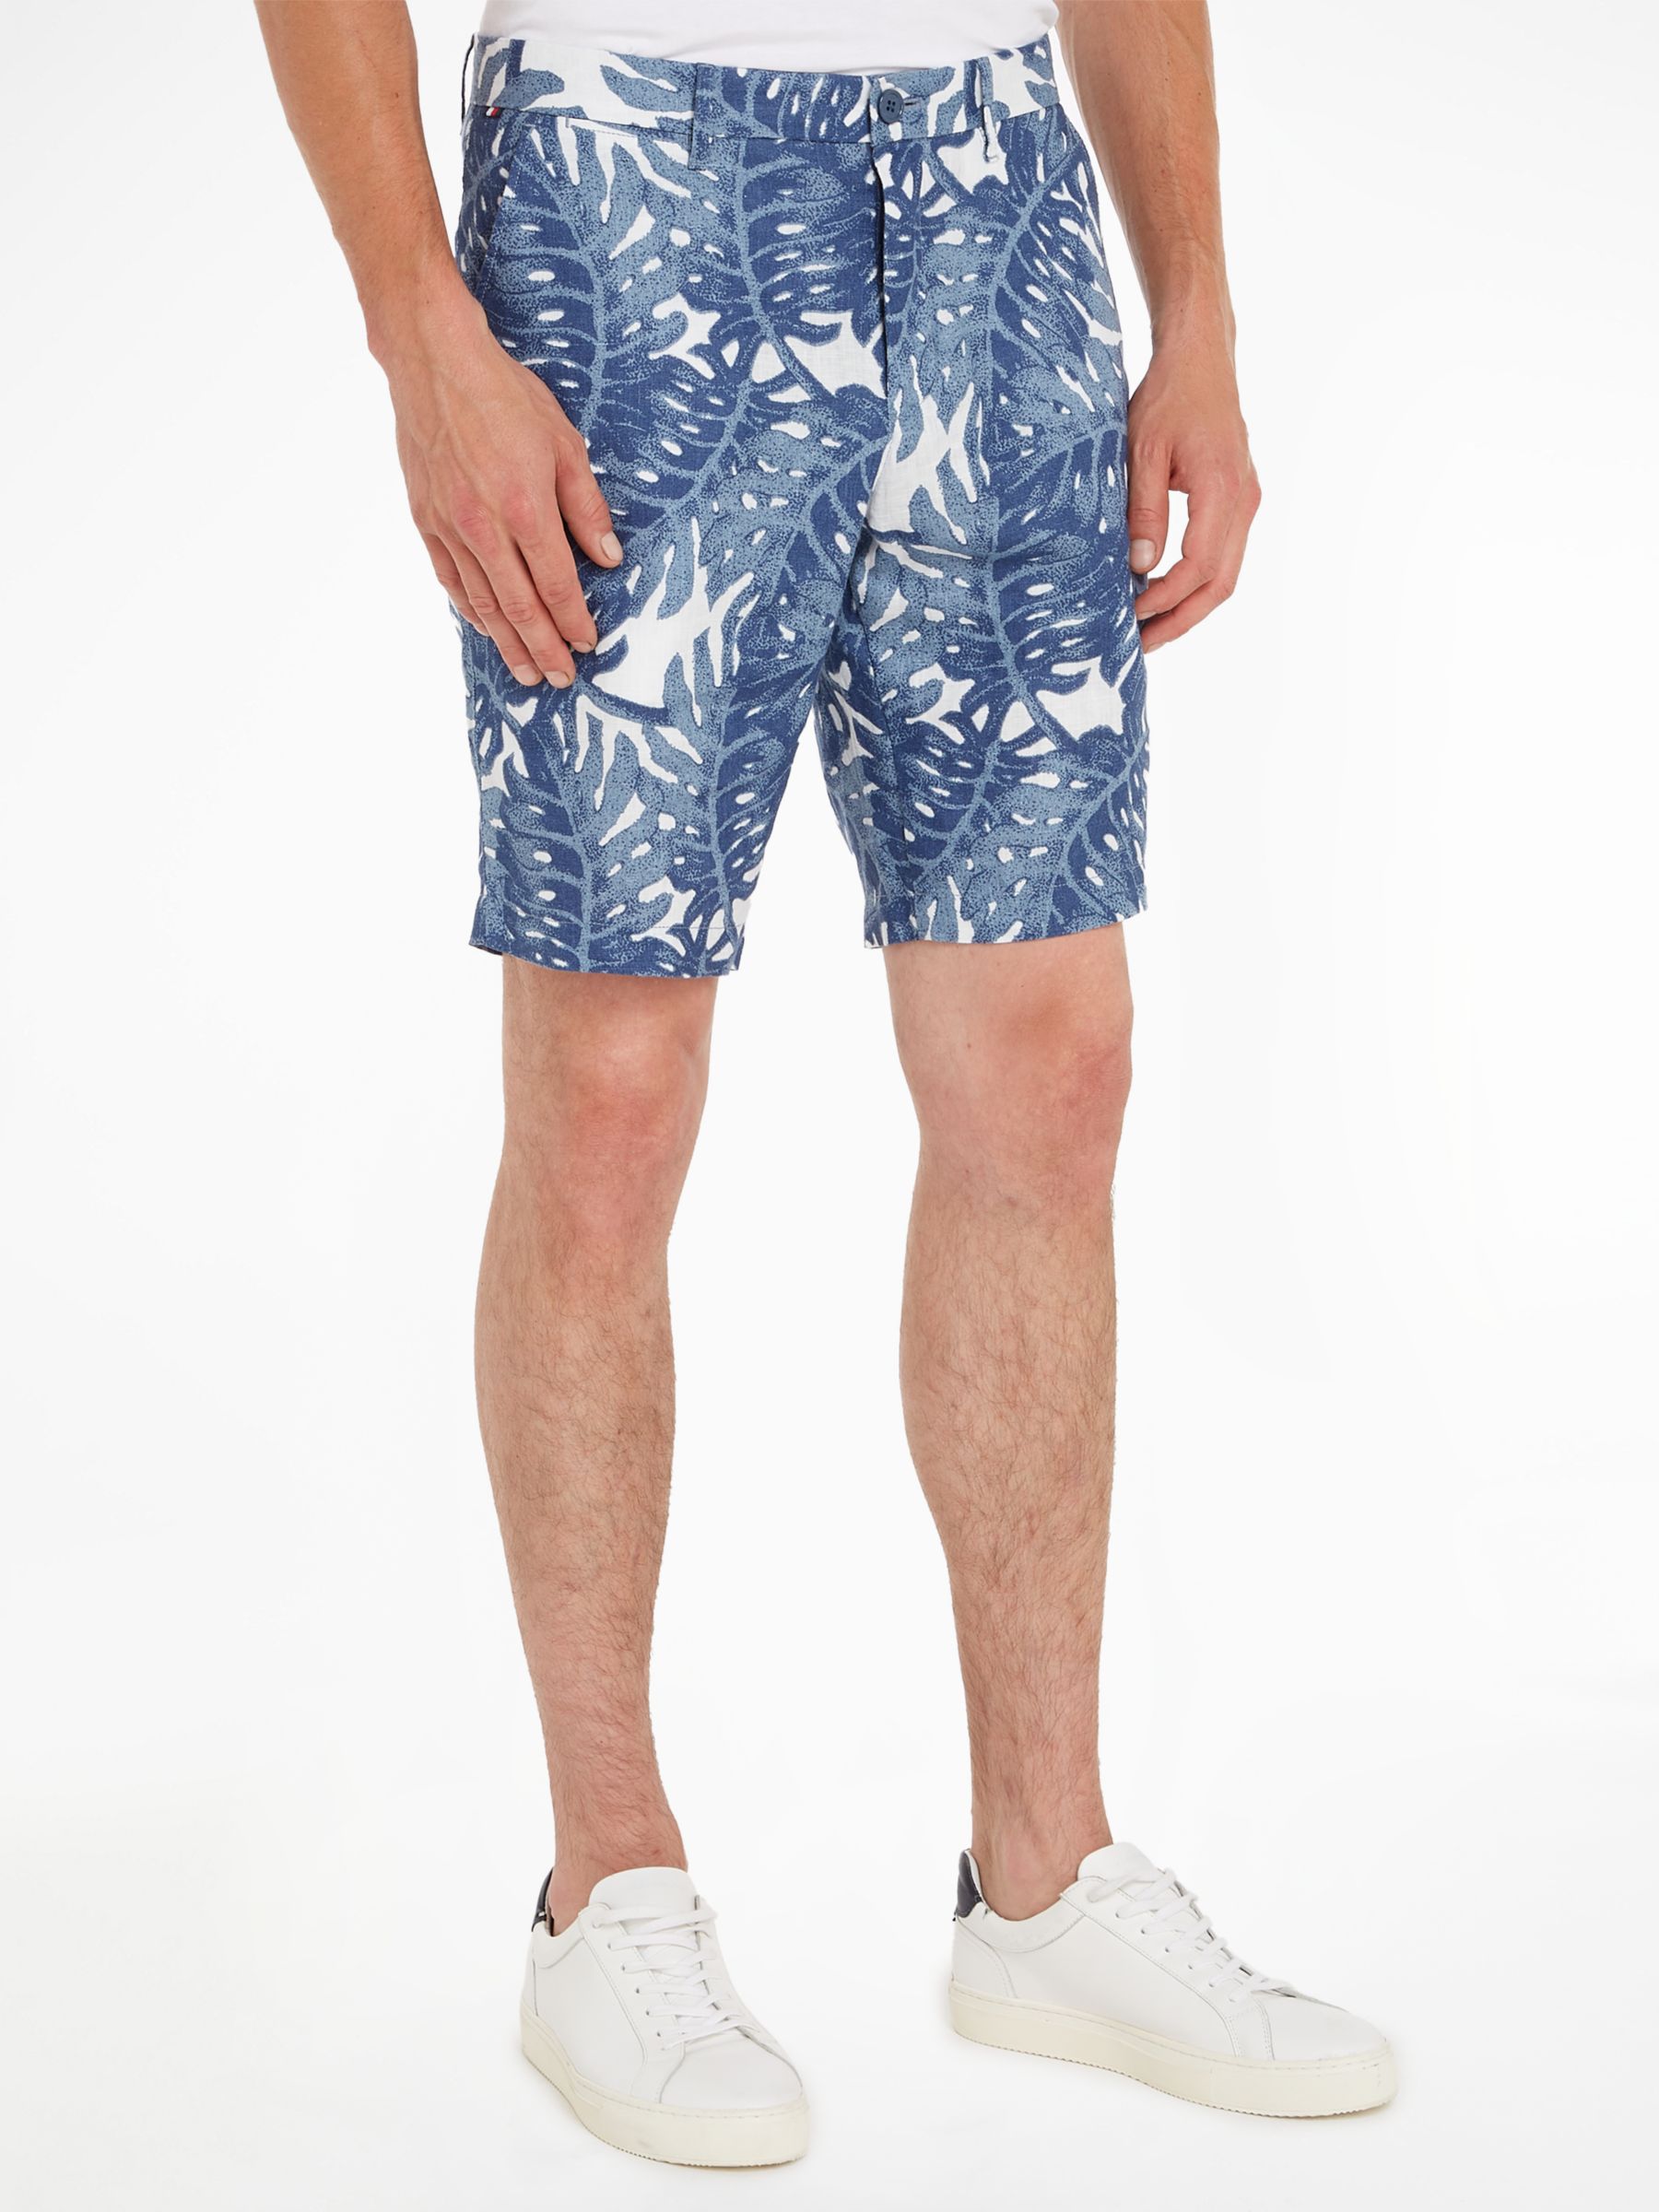 Tommy Hilfiger Harlem Linen Floral Shorts, Blue, 30R